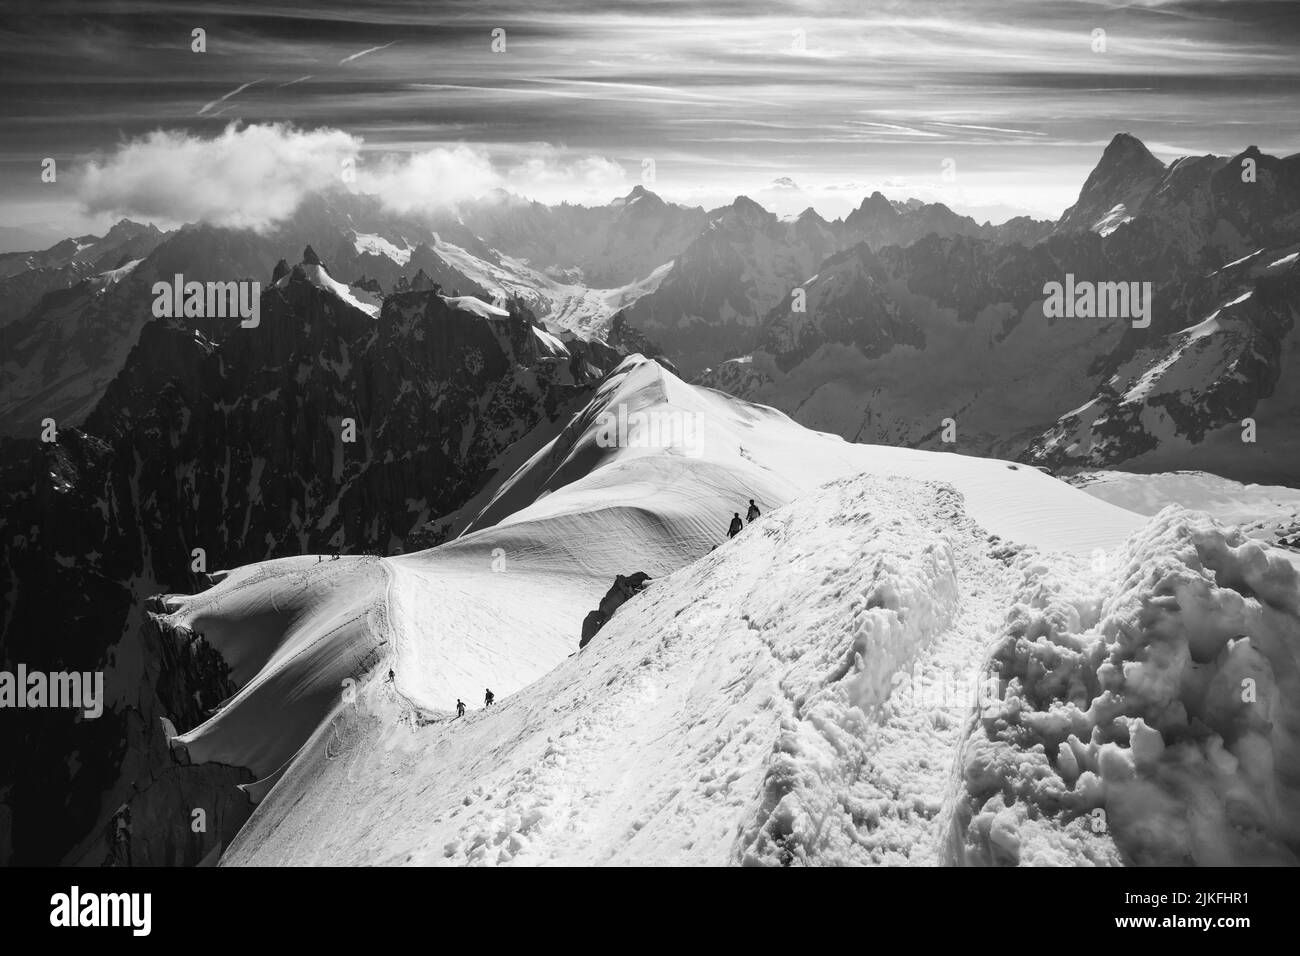 Scialpinisti che scendono dalla cima dell'Aiguille du Midi nel Monte bianco, in Francia Foto Stock